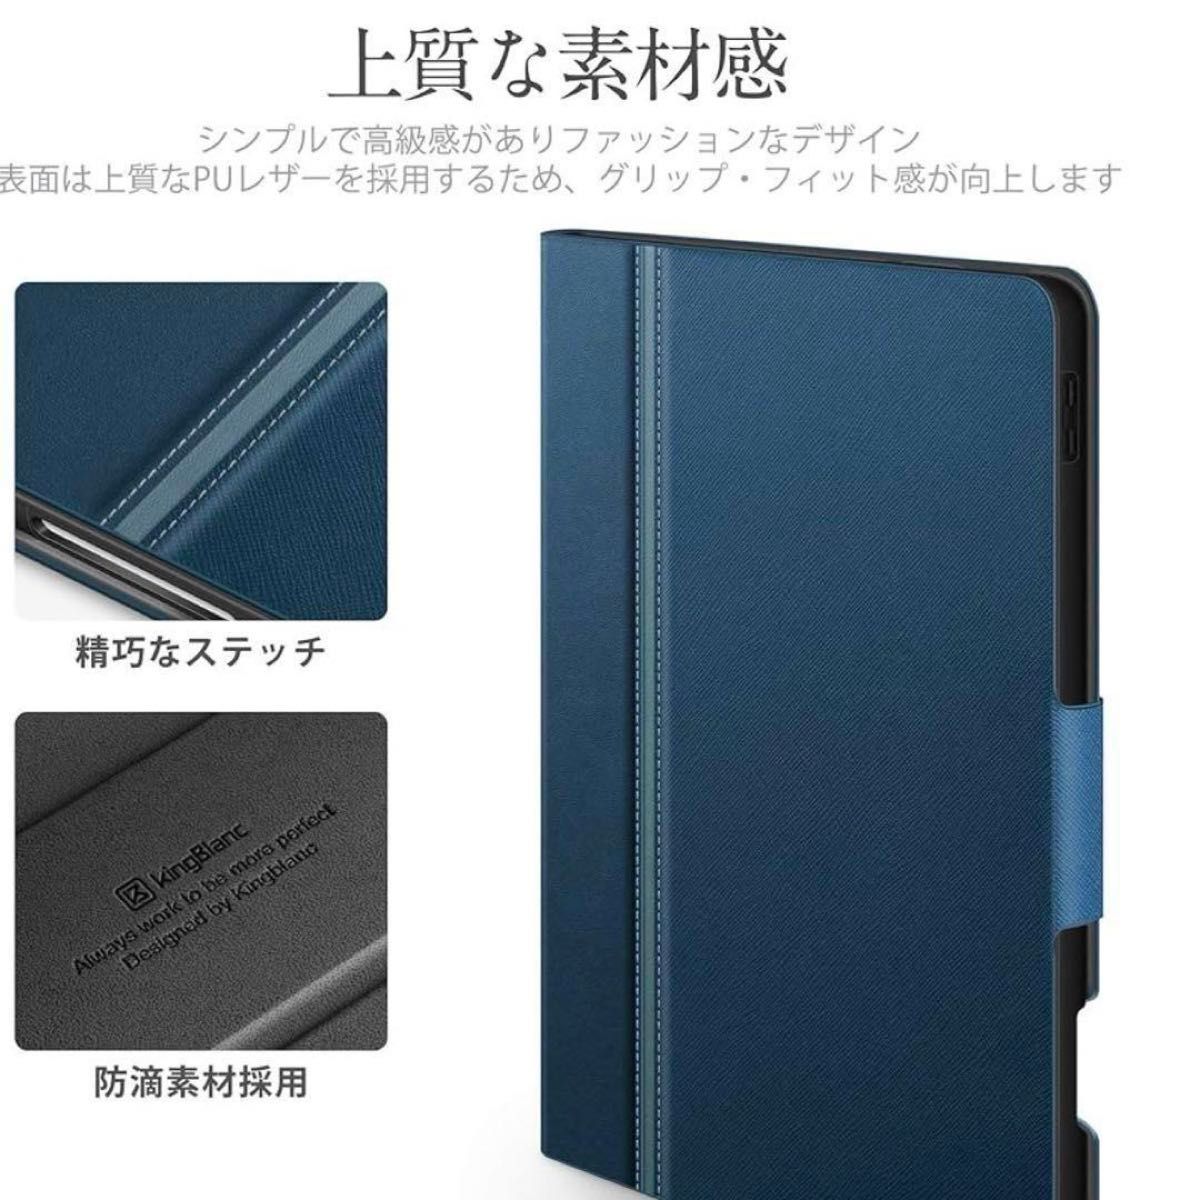 iPad Pro 11インチ ケース カバー アップルペンシル収納可能 ペアリング・ワイヤレス充電対応 スマートケース, ブルー